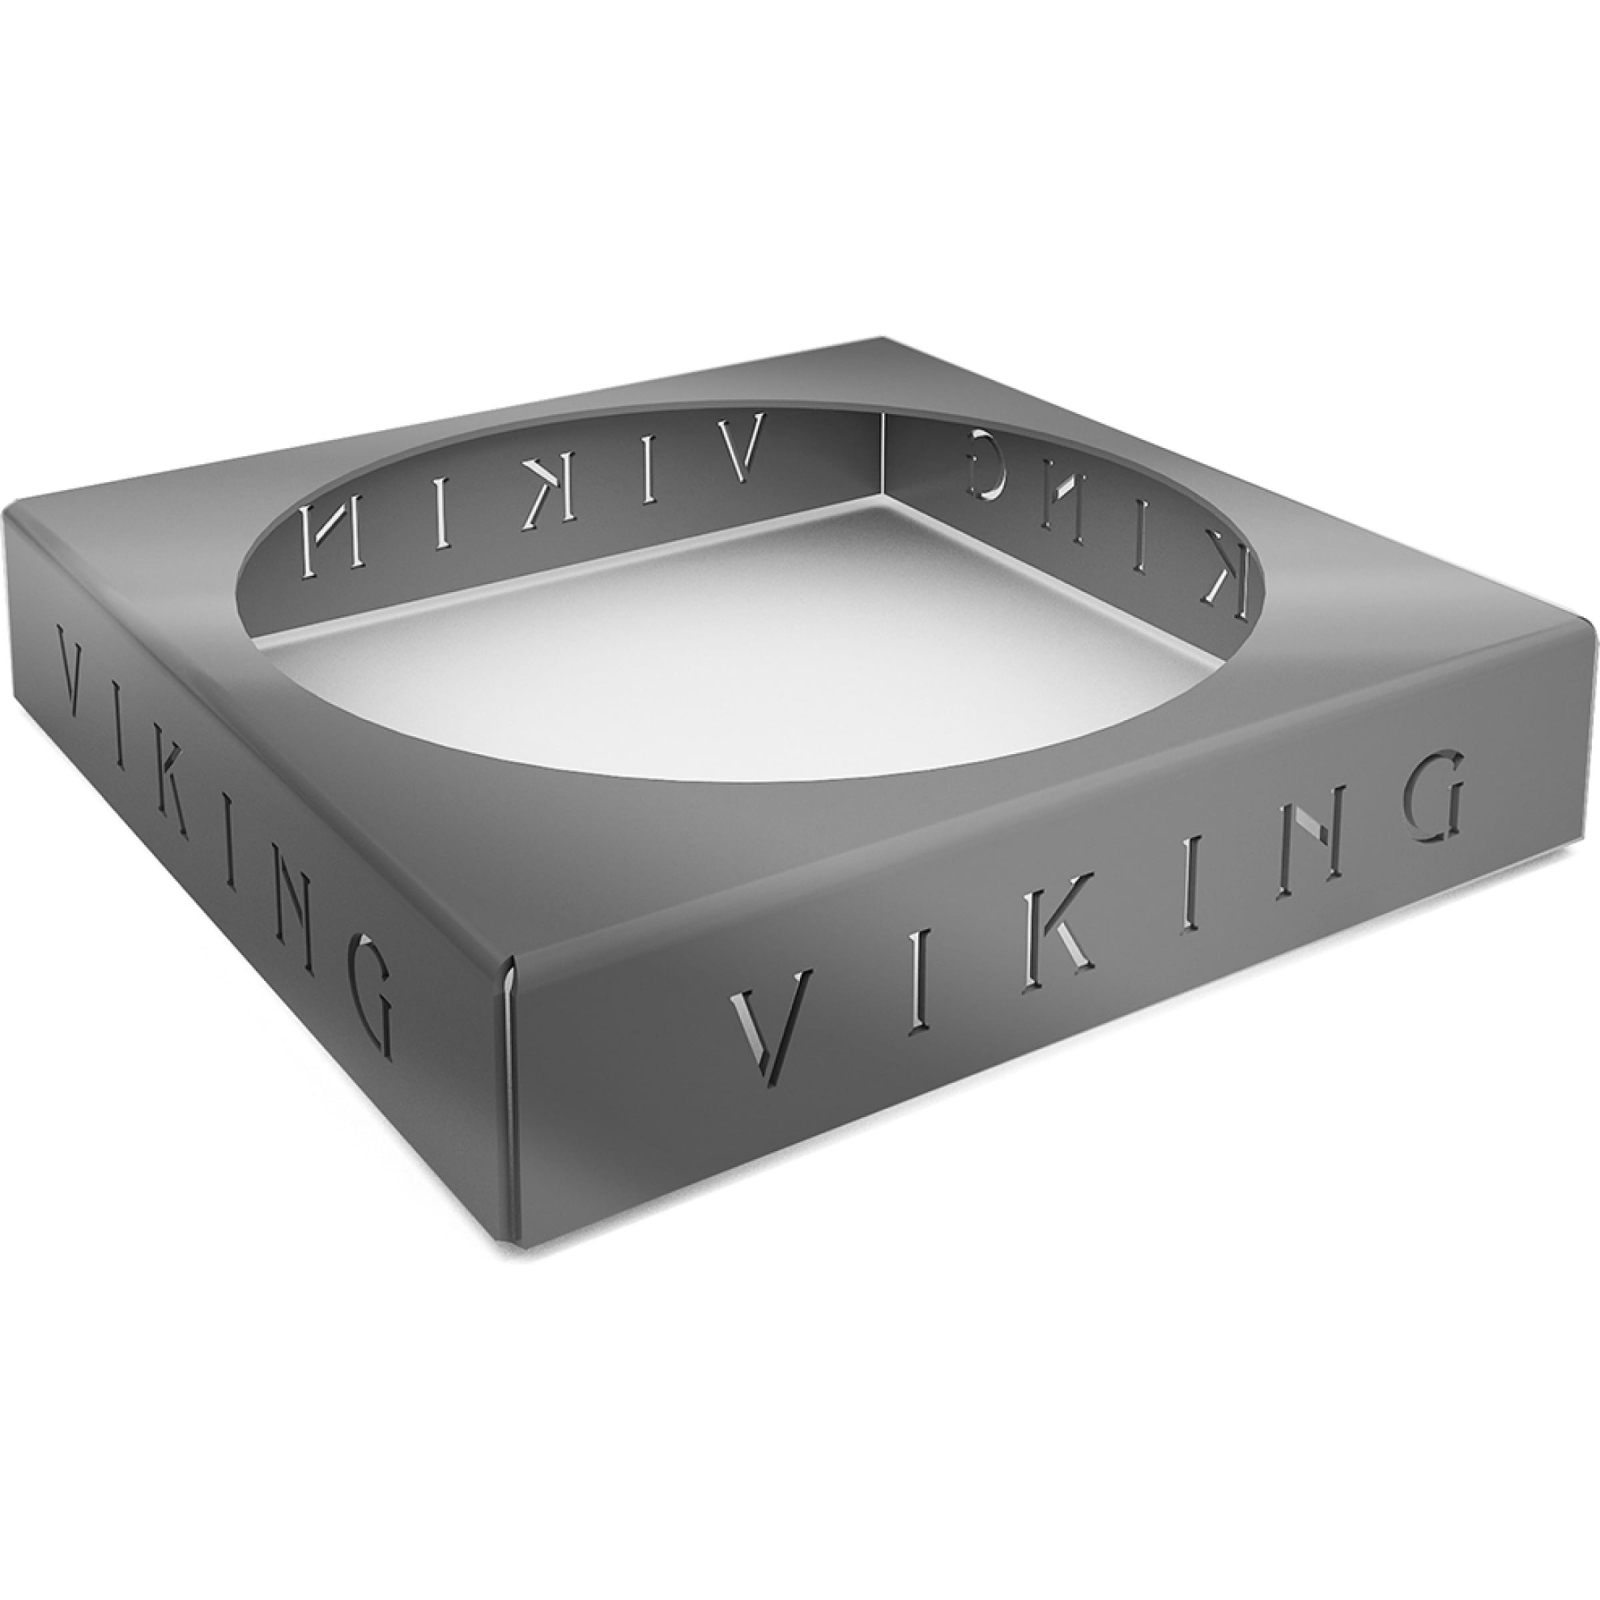 Подставка под казан Grillux для VikinG подставка под казан для мангала viking xl 37х37х7см сталь s3мм grillux россия